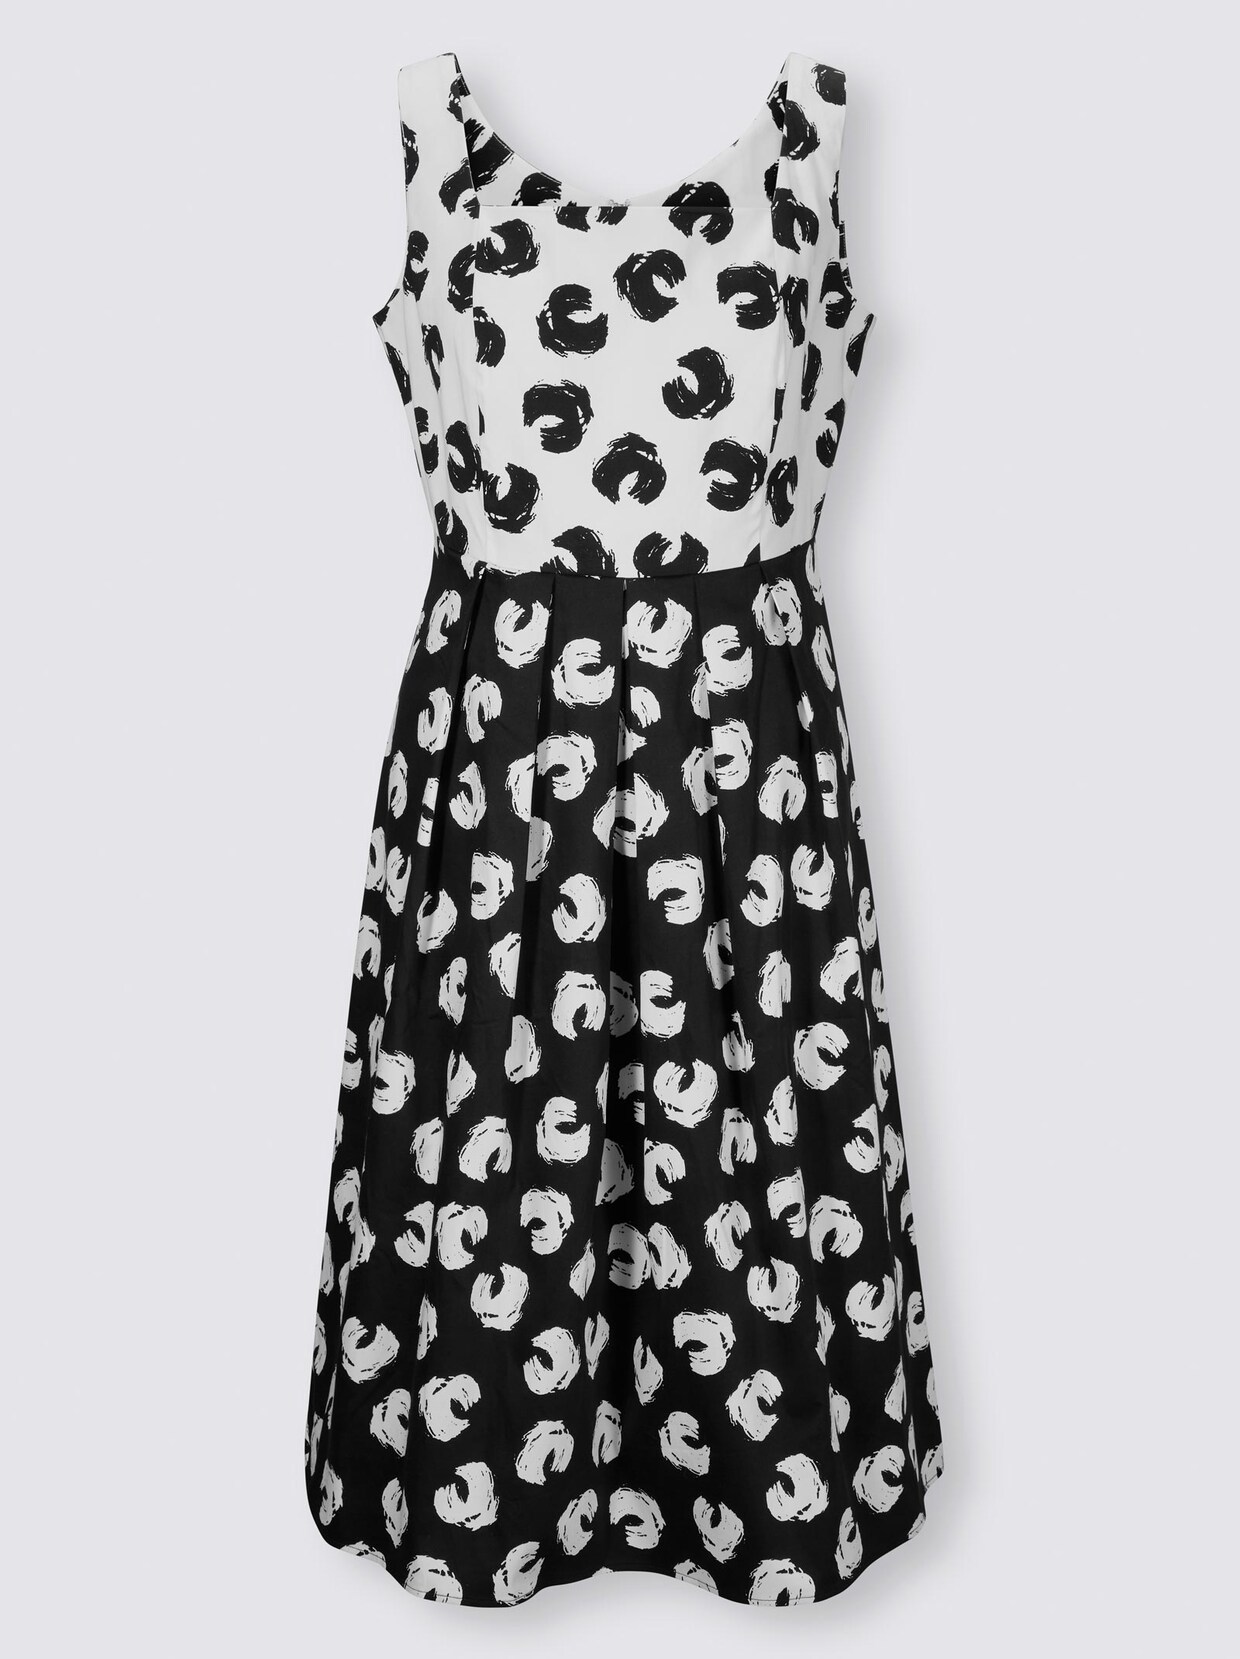 Ashley Brooke Druck-Kleid - schwarz-weiß-bedruckt